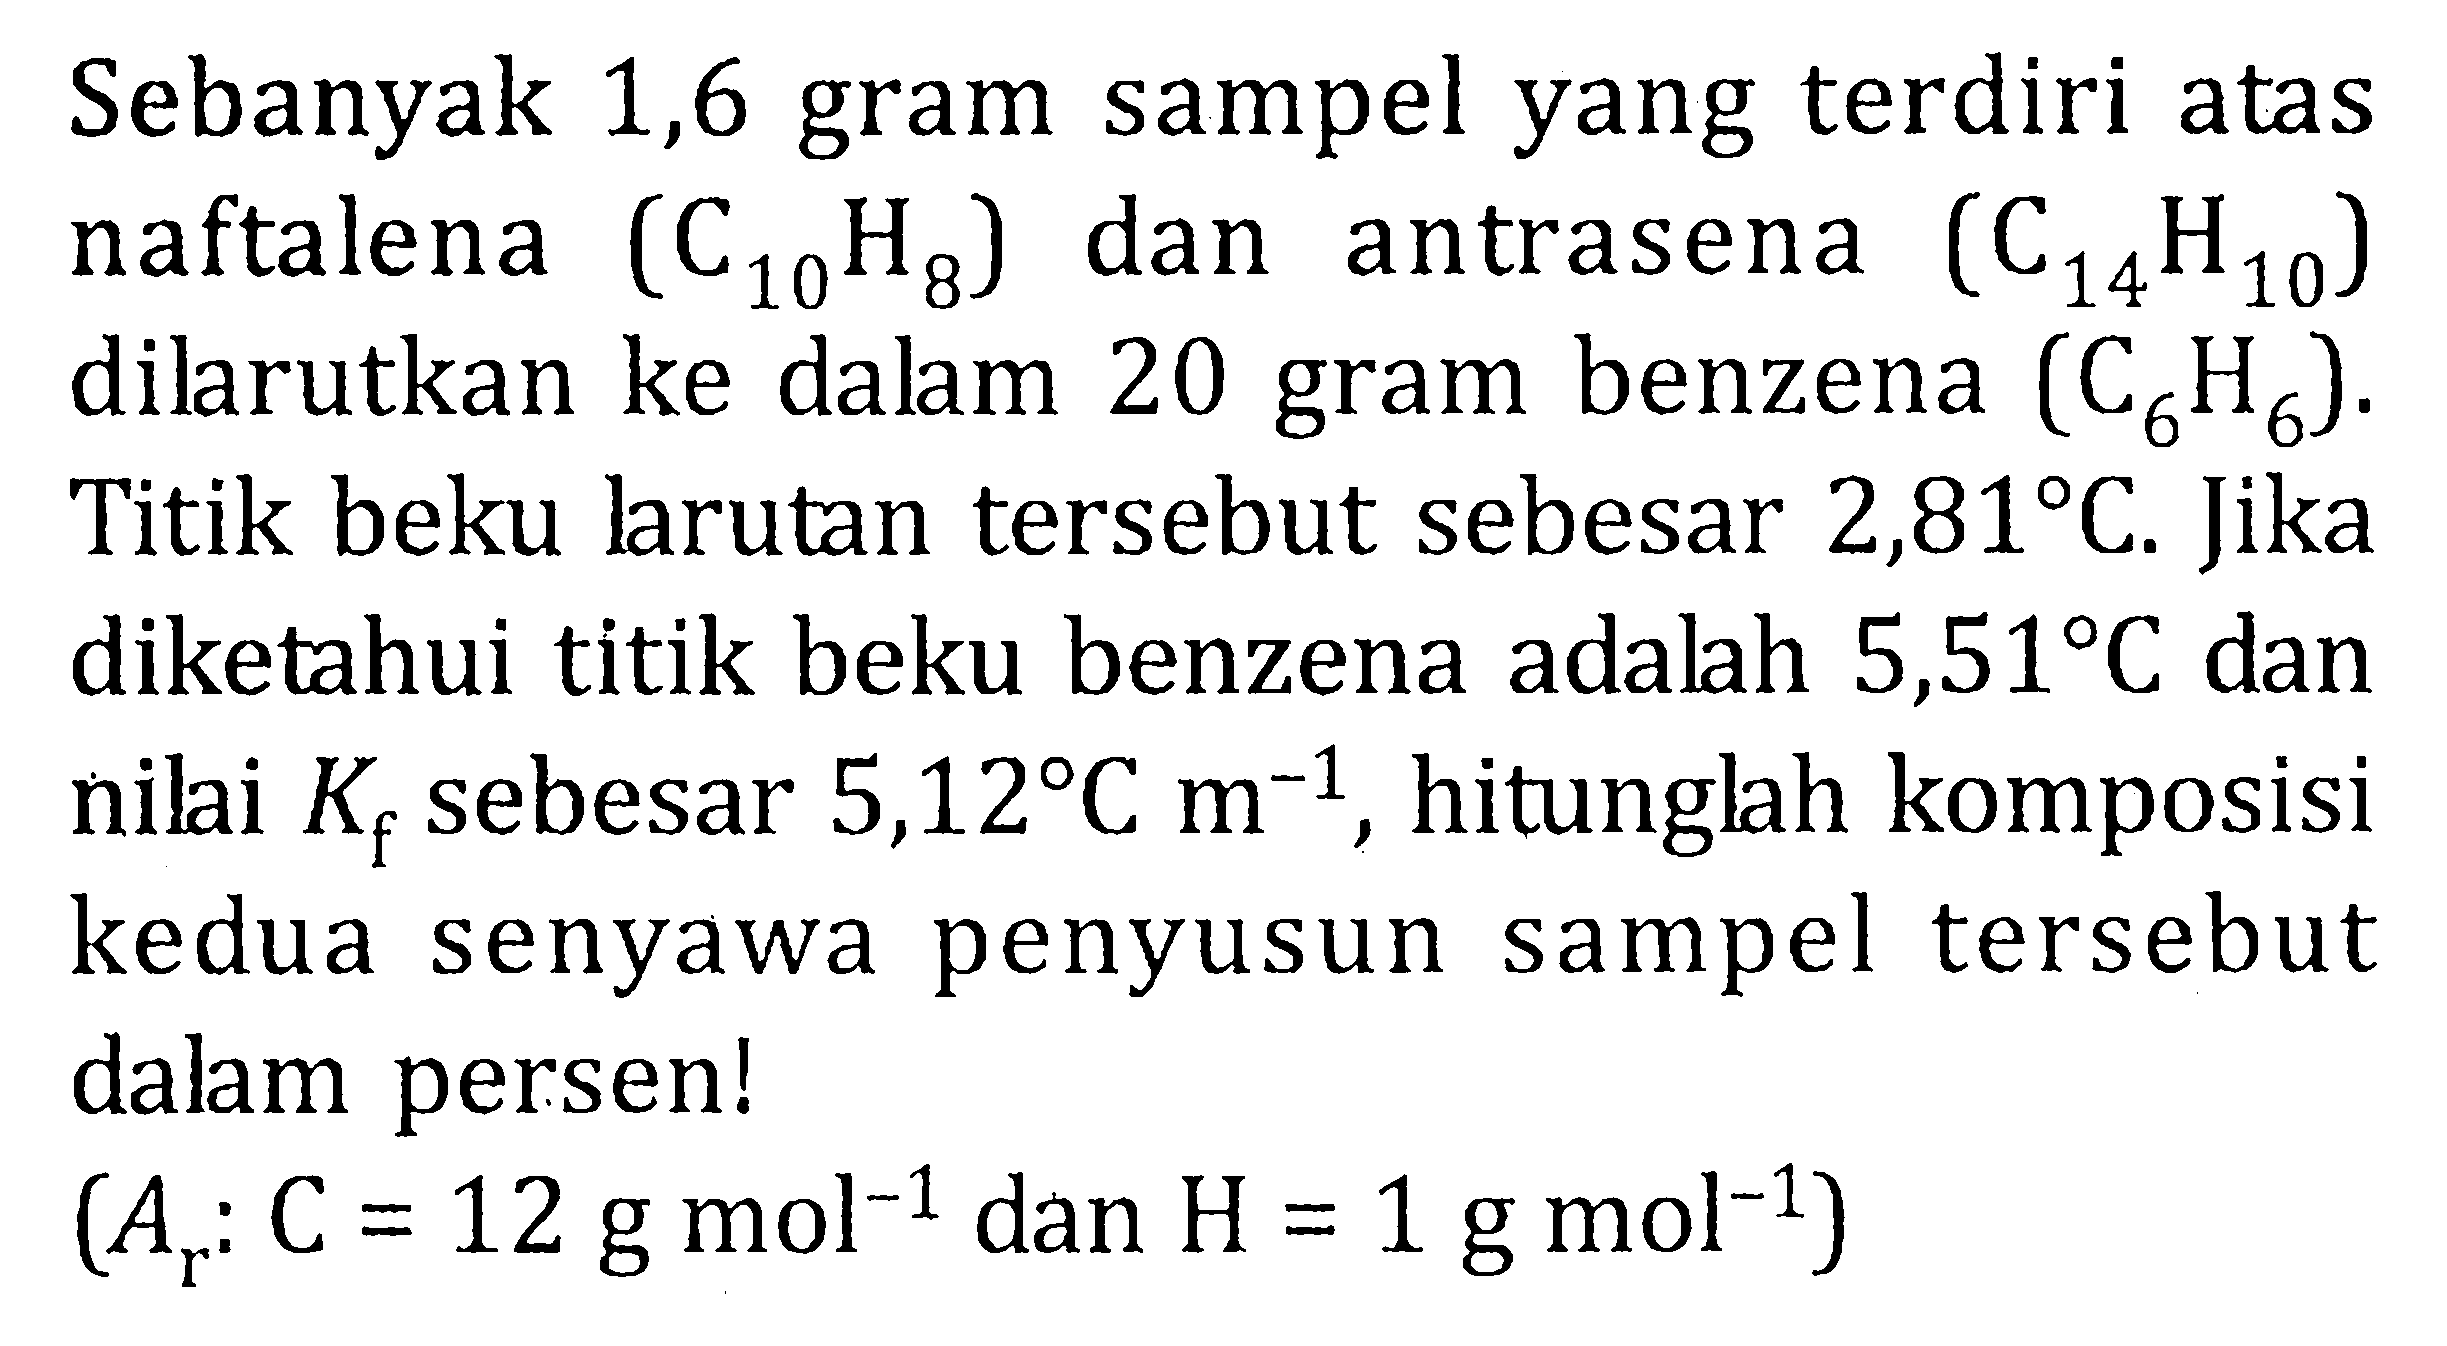 Sebanyak 1,6 gram sampel yang terdiri atas naftalena  (C10 H8) dan antrasena  (C14 H10) dilarutkan ke dalam 20 gram benzena  (C6 H6) . Titik beku larutan tersebut sebesar  2,81 C . Jika diketahui titik beku benzena adalah  5,51 C  dan nilai  Kf  sebesar  5,12 C m^(-1) , hitunglah komposisi kedua senyawa penyusun sampel tersebut dalam persen!

(Ar: C=12 g mol^(-1)  { dan ) H=1 g mol^(-1))
